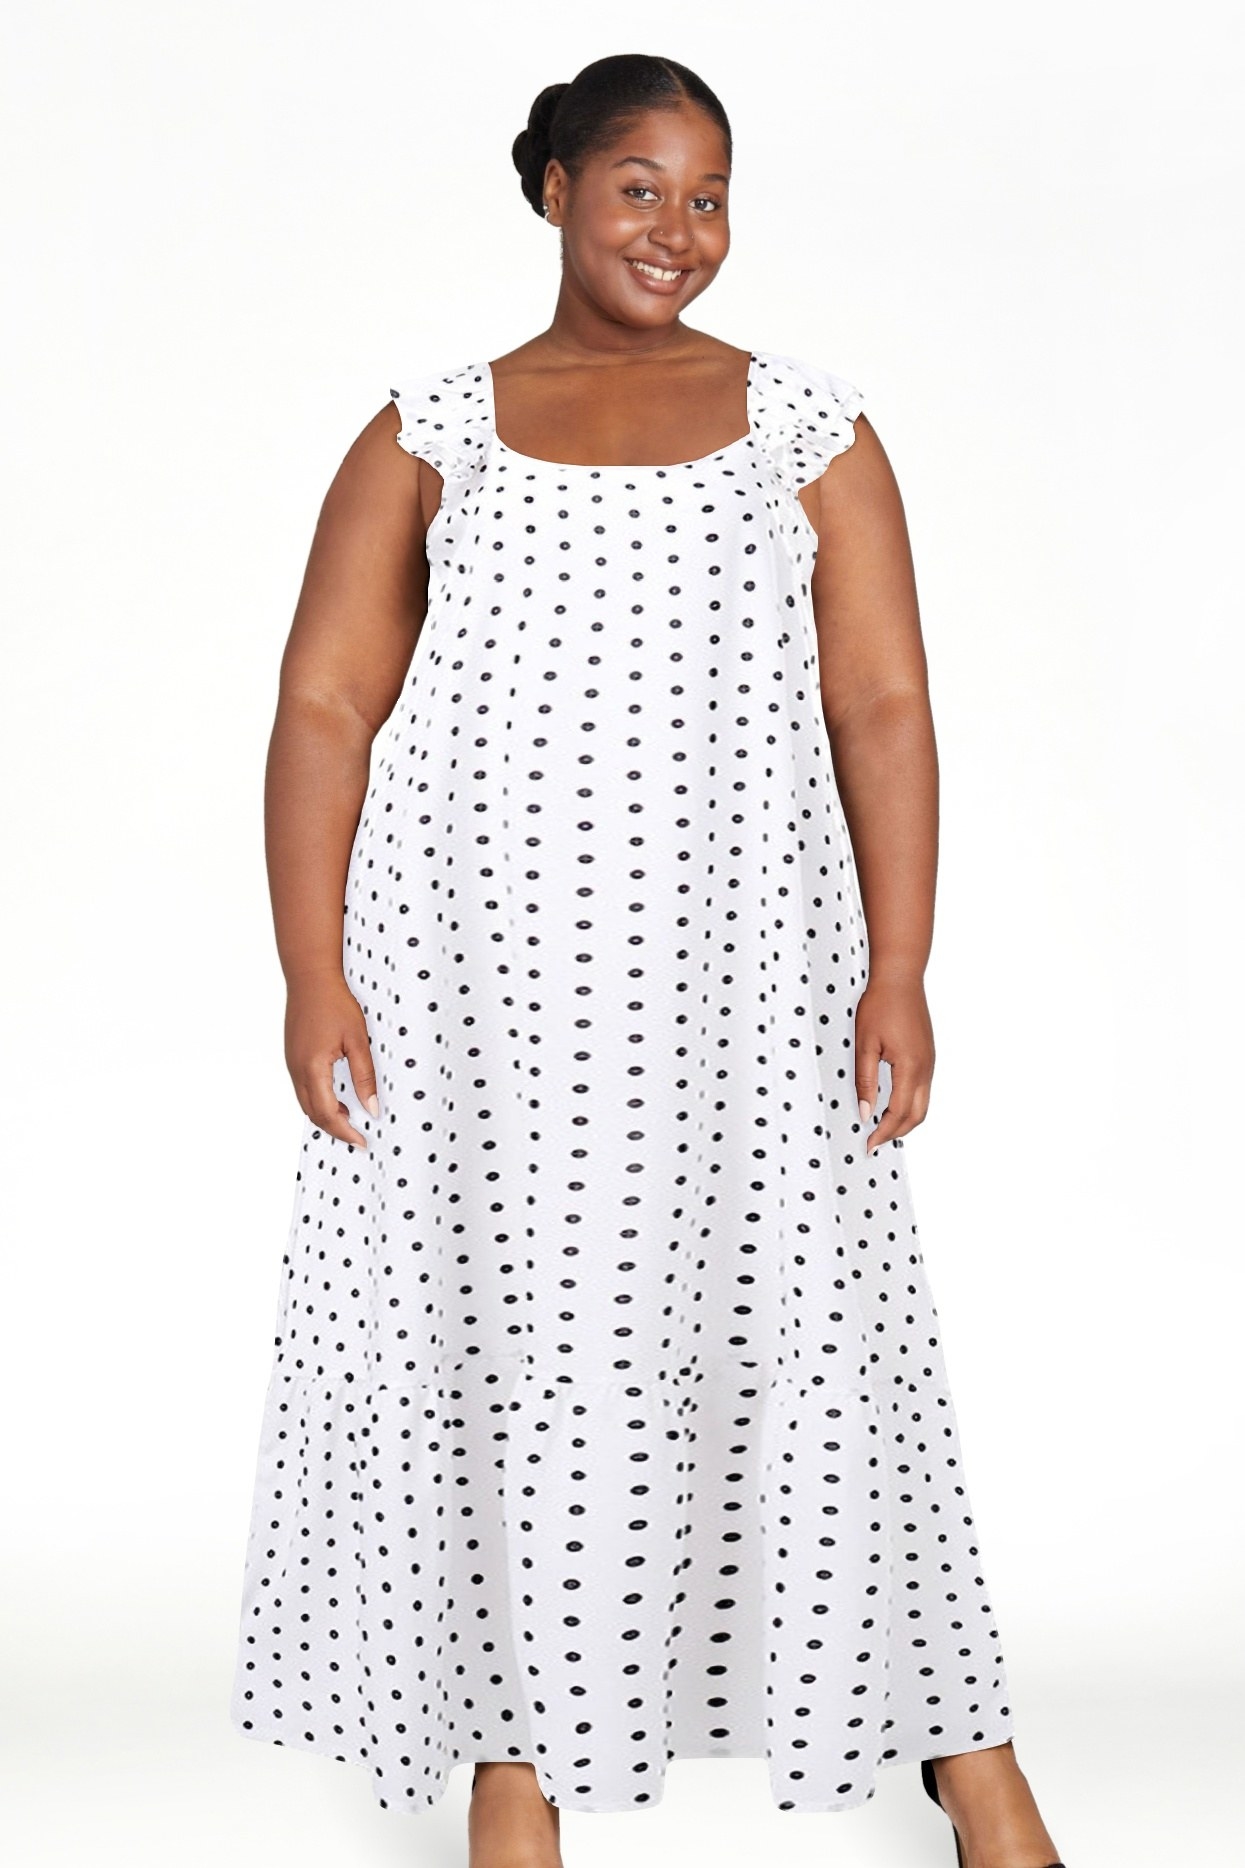 Woman in a sleeveless polka dot dress, smiling at the camera